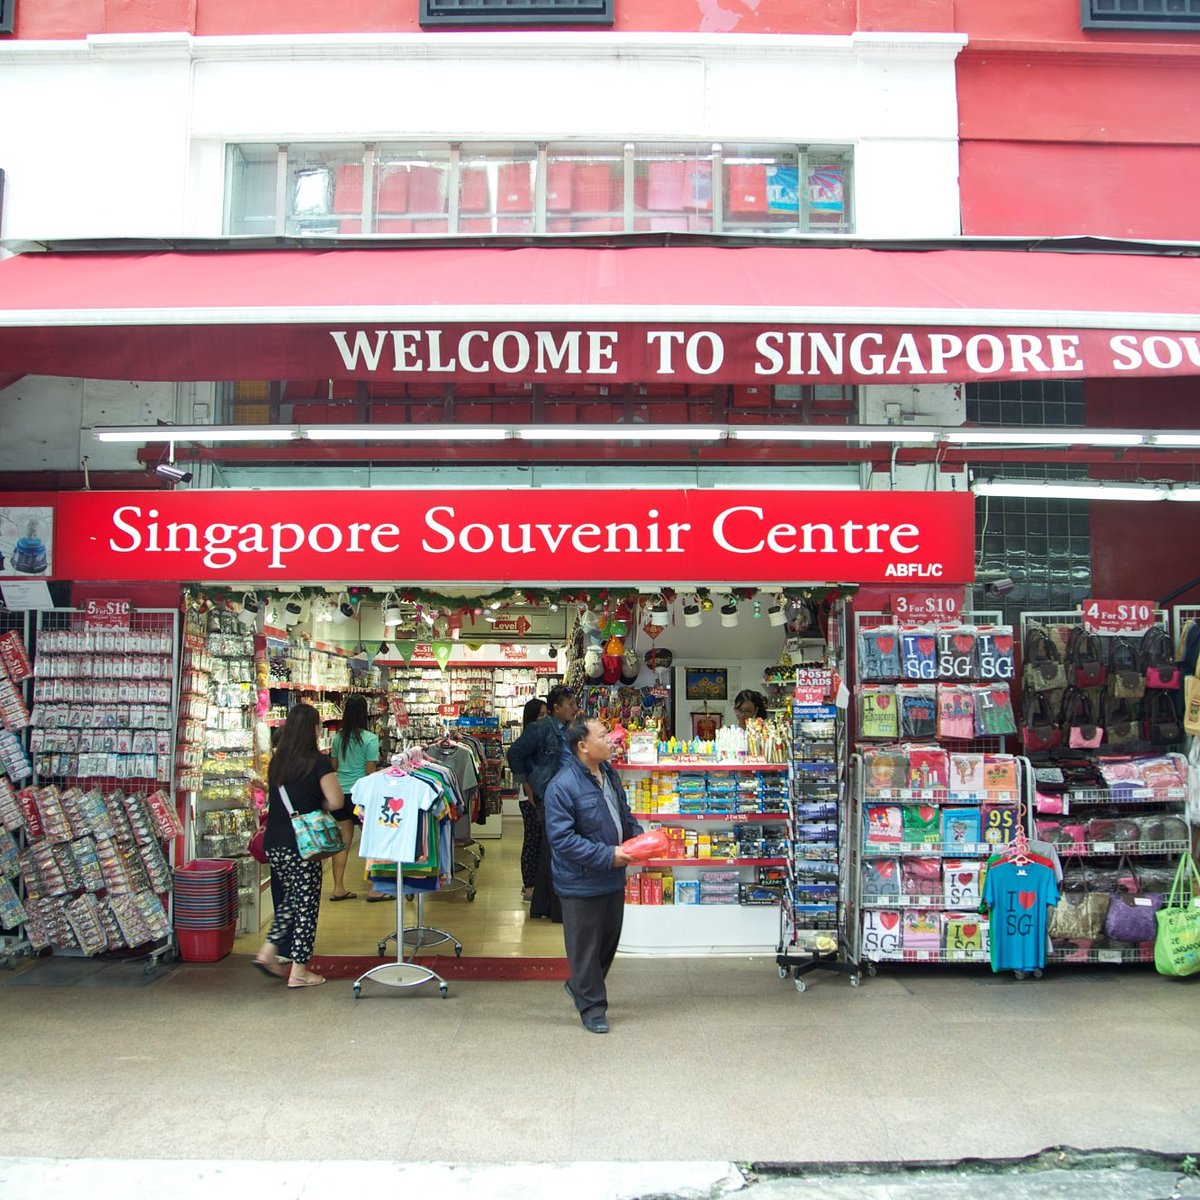 SG Store - SG Store ਨੇ ਕੋਈ ਨਵੀਂ ਫੋਟੋ ਨੂੰ